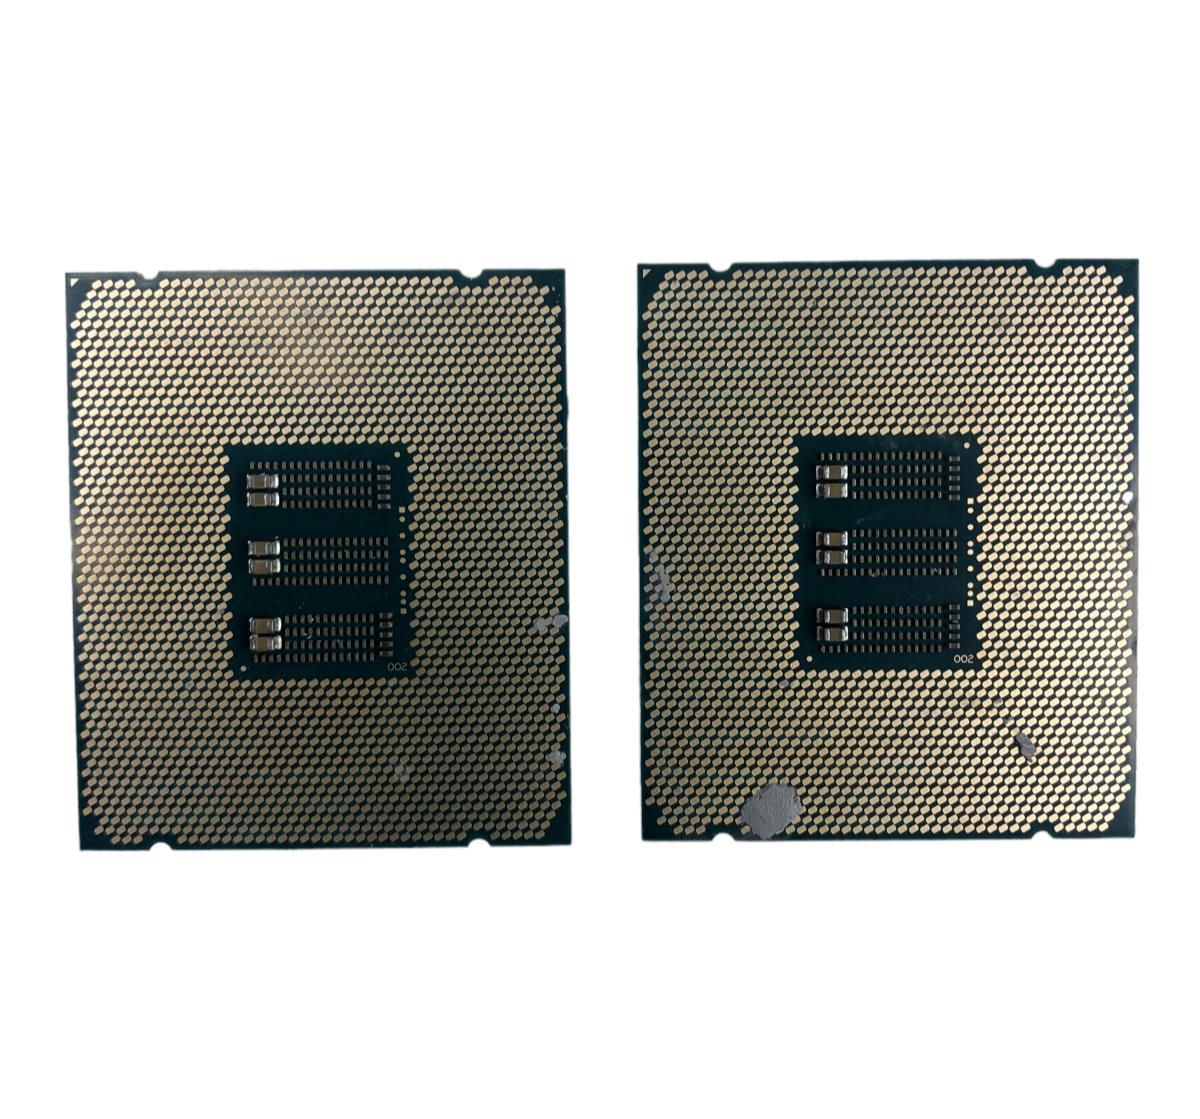 LOT 2 Intel Xeon E7-4830 v4 SR2S3 14-Core 2.00GHz 35MB Cache L6088F831 PROCESSOR